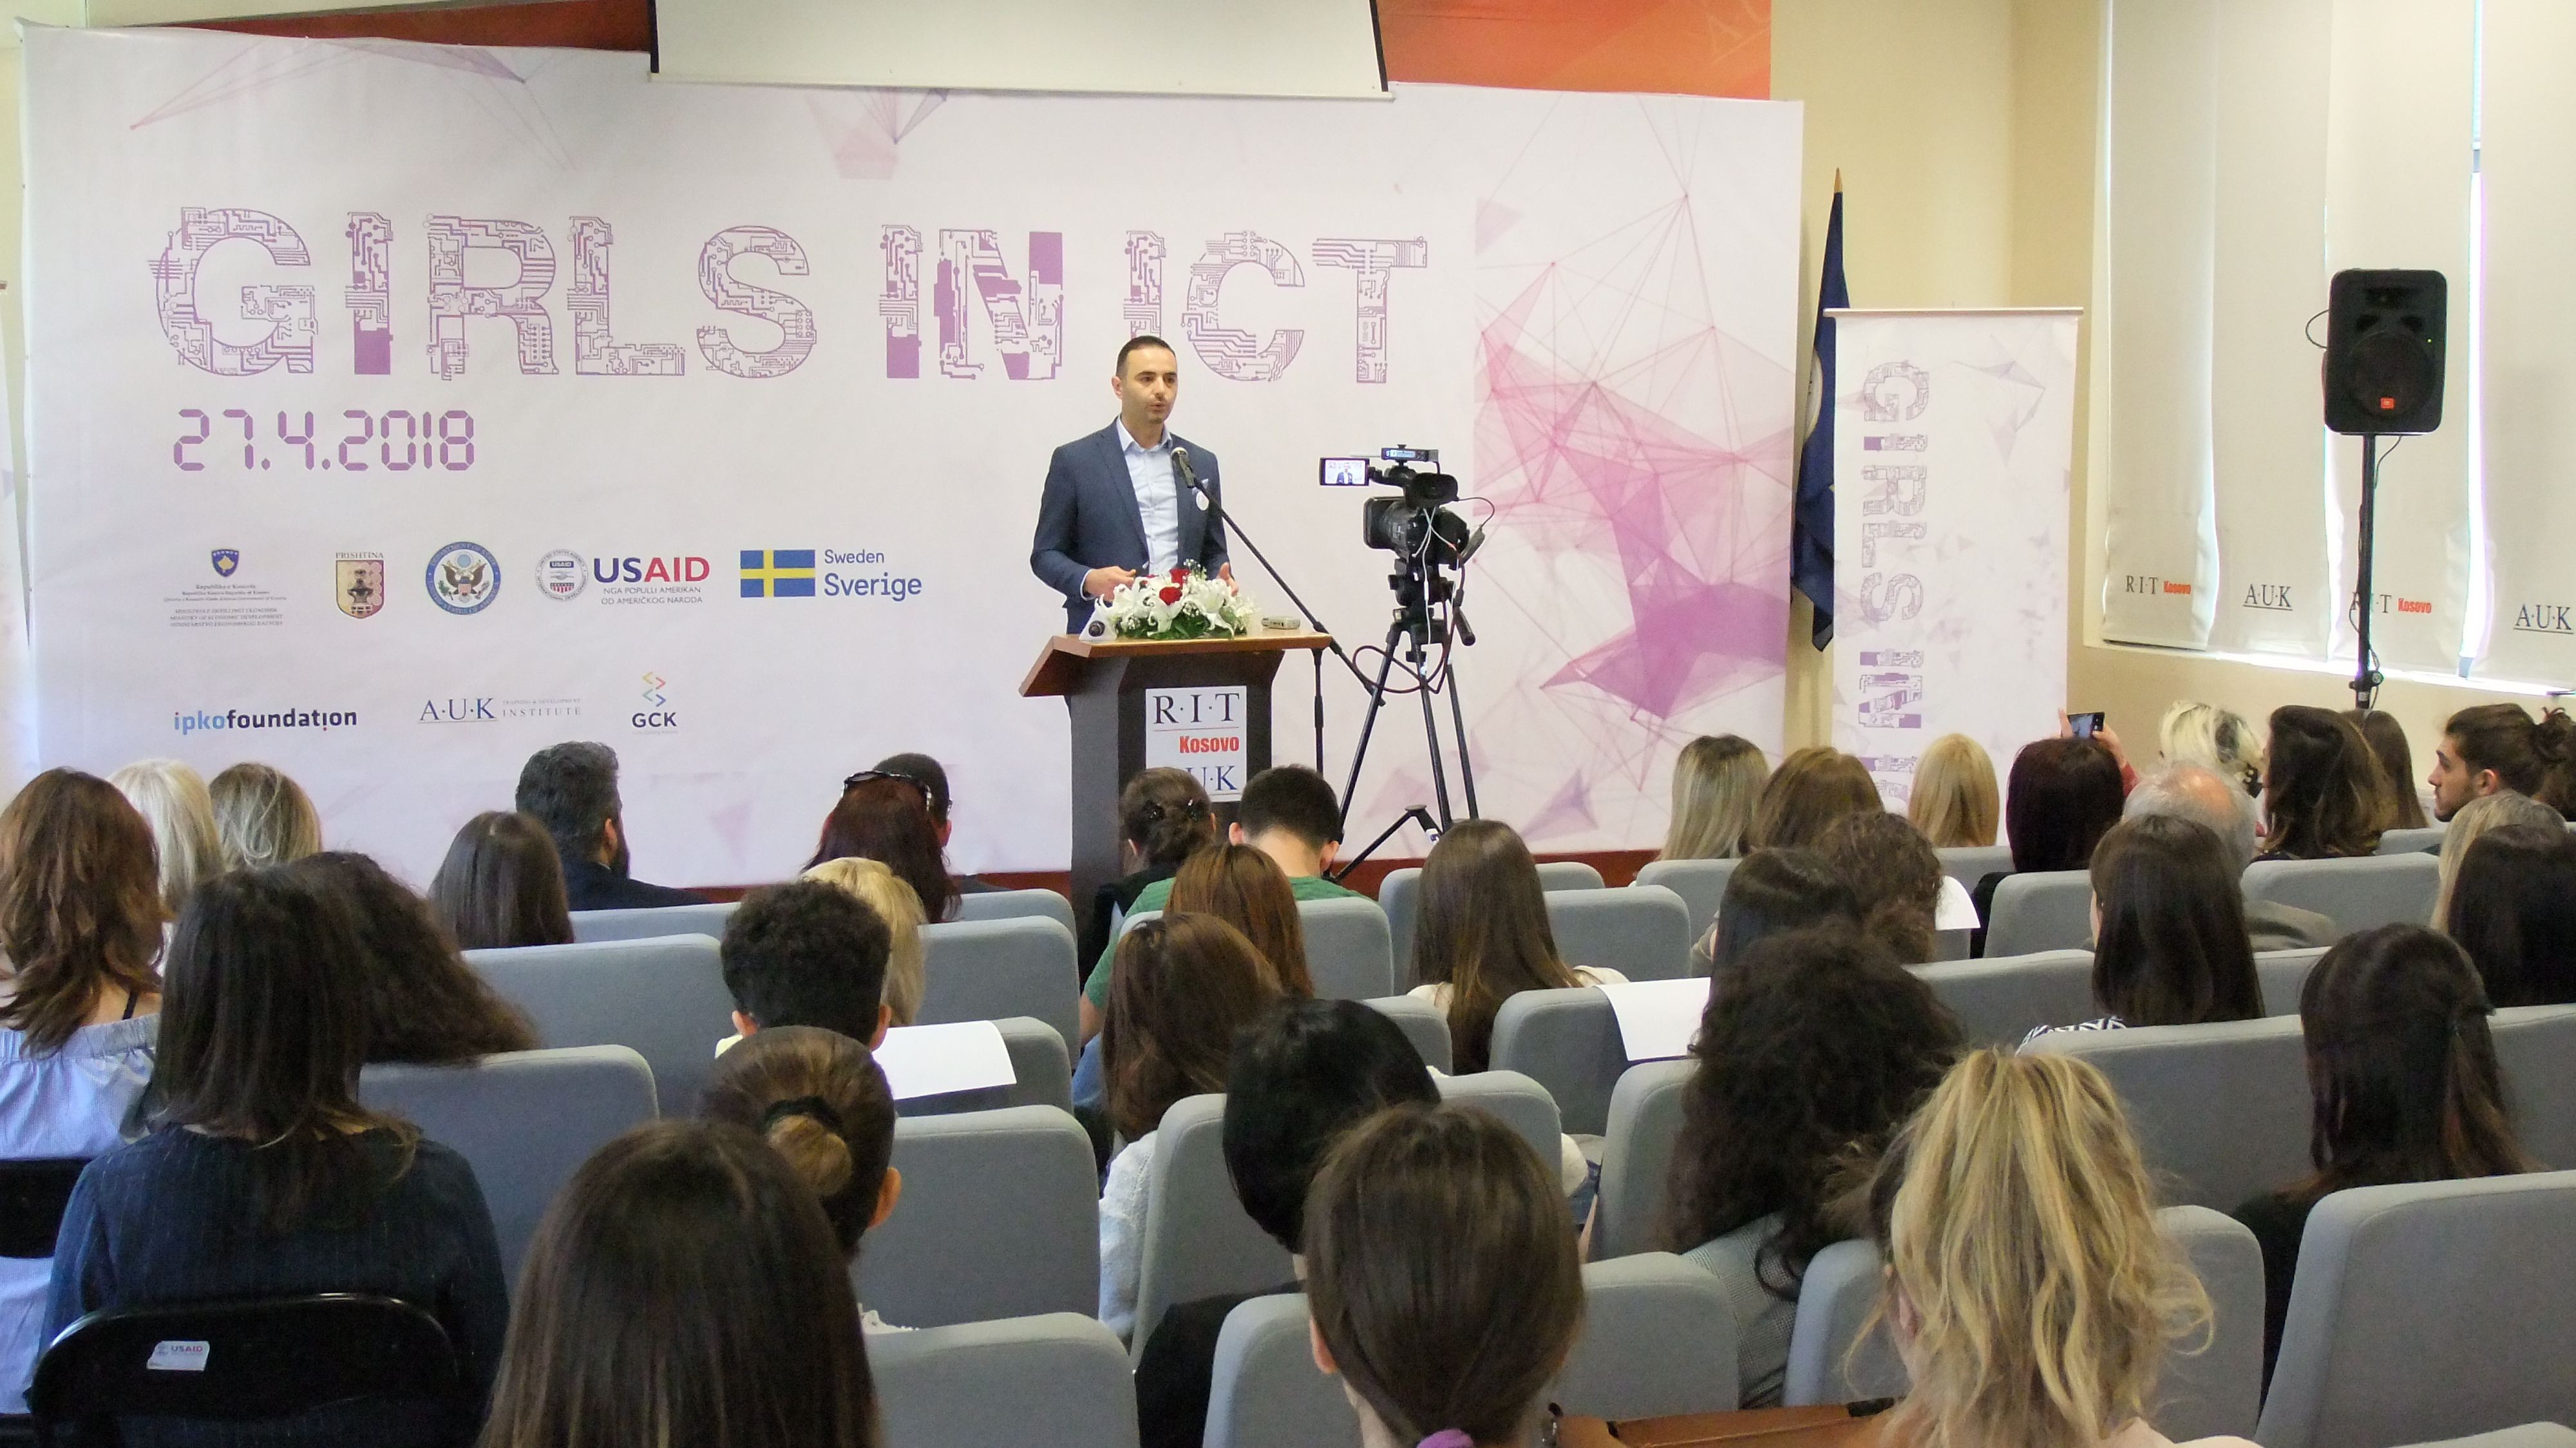 Mbahet punëtoria "Vajzat në inovacion për ndryshim"